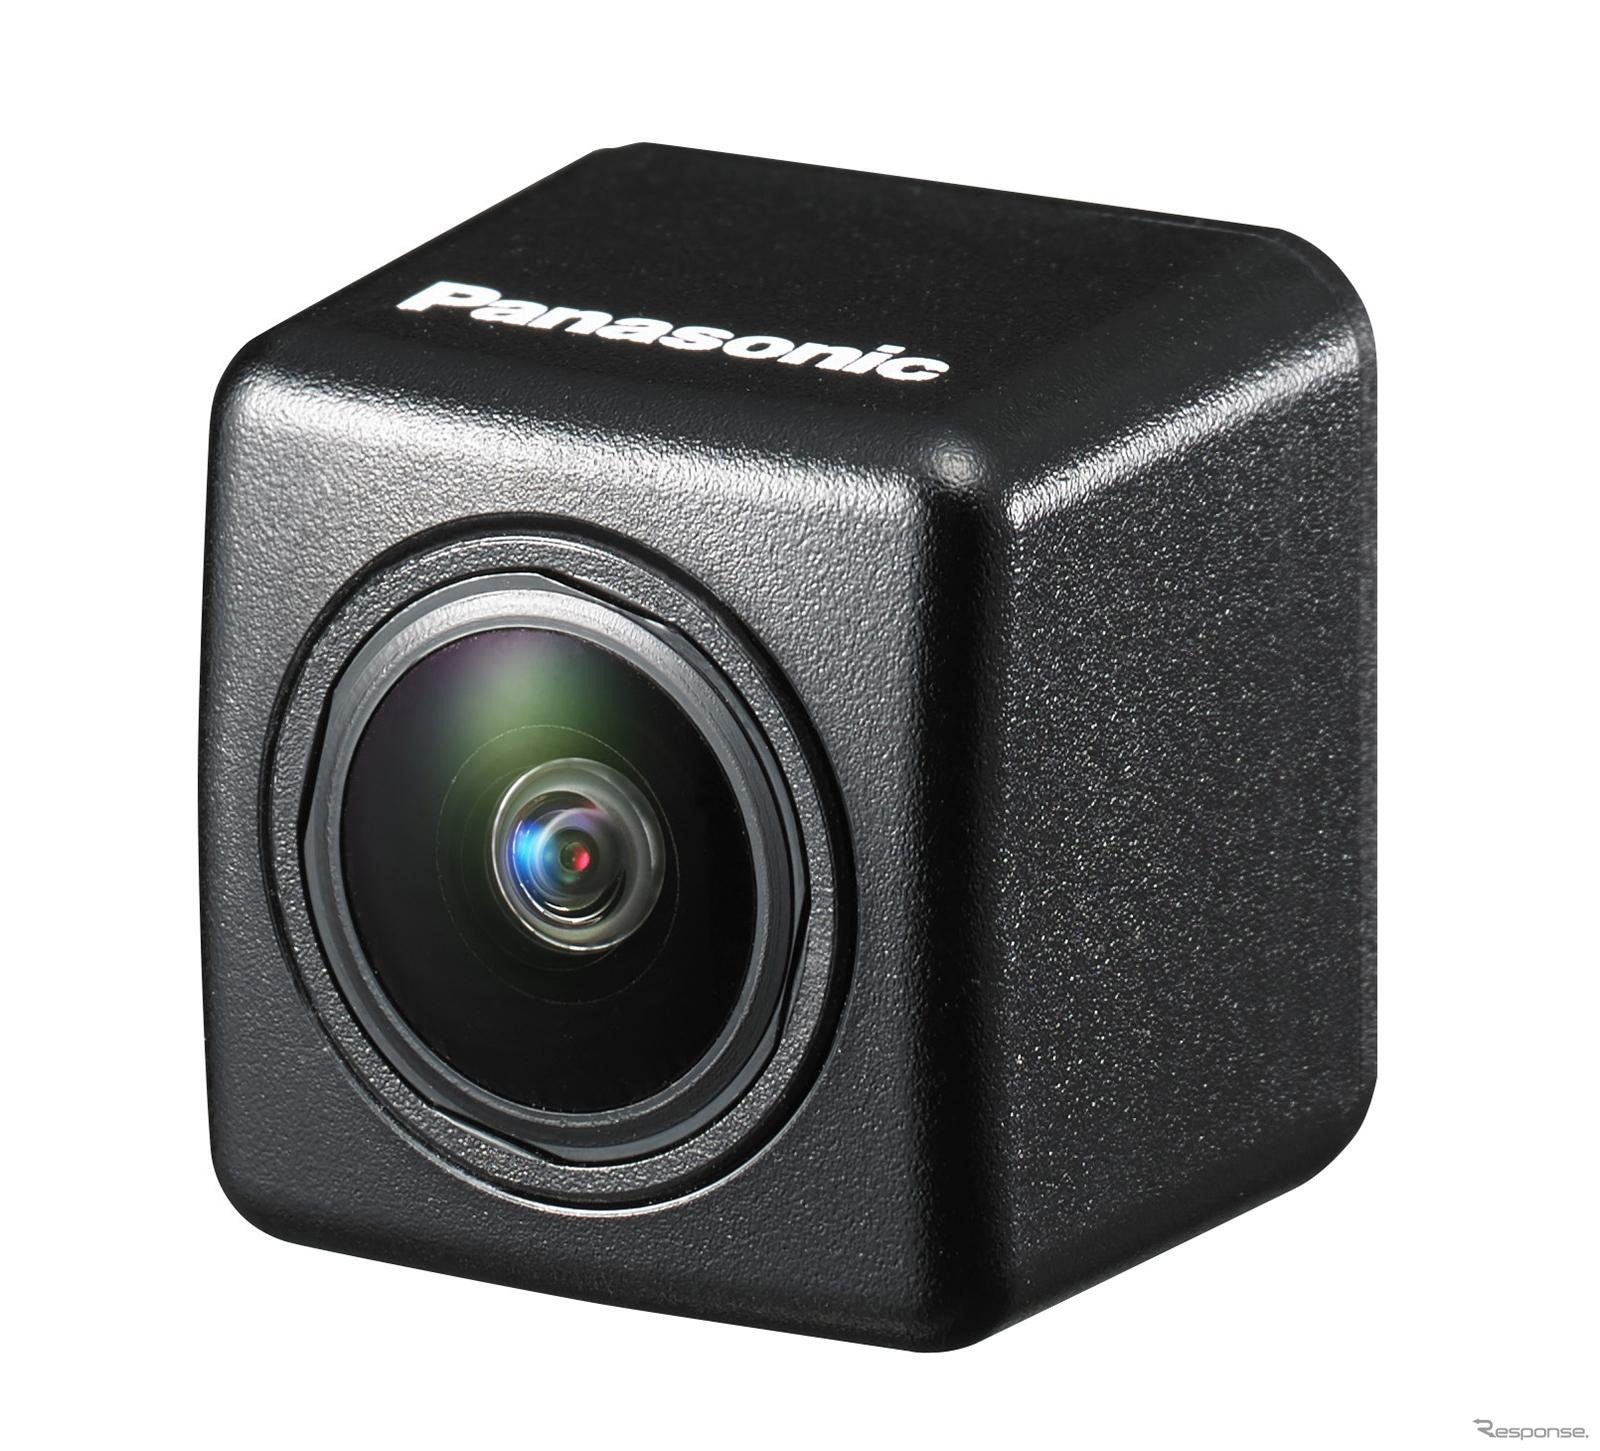 オプションバックカメラの新モデル『CY-RC100KD』は7月上旬発売